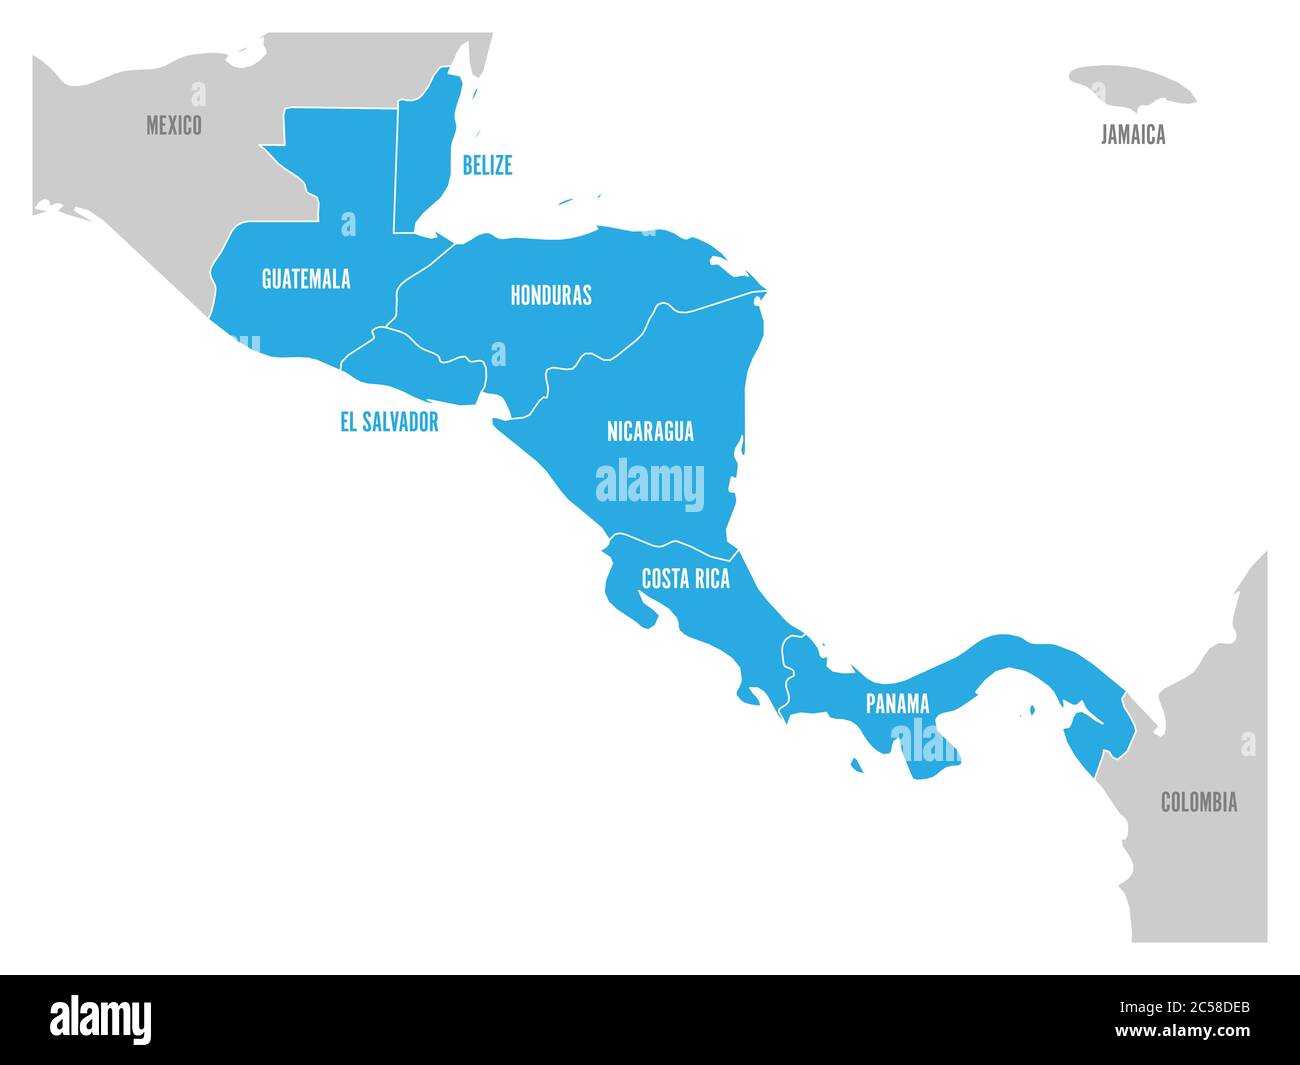 Mappa della regione dell'America Centrale con gli stati dell'america Centrale evidenziati in blu. Etichette del nome del paese. Semplice illustrazione vettoriale piatta. Illustrazione Vettoriale